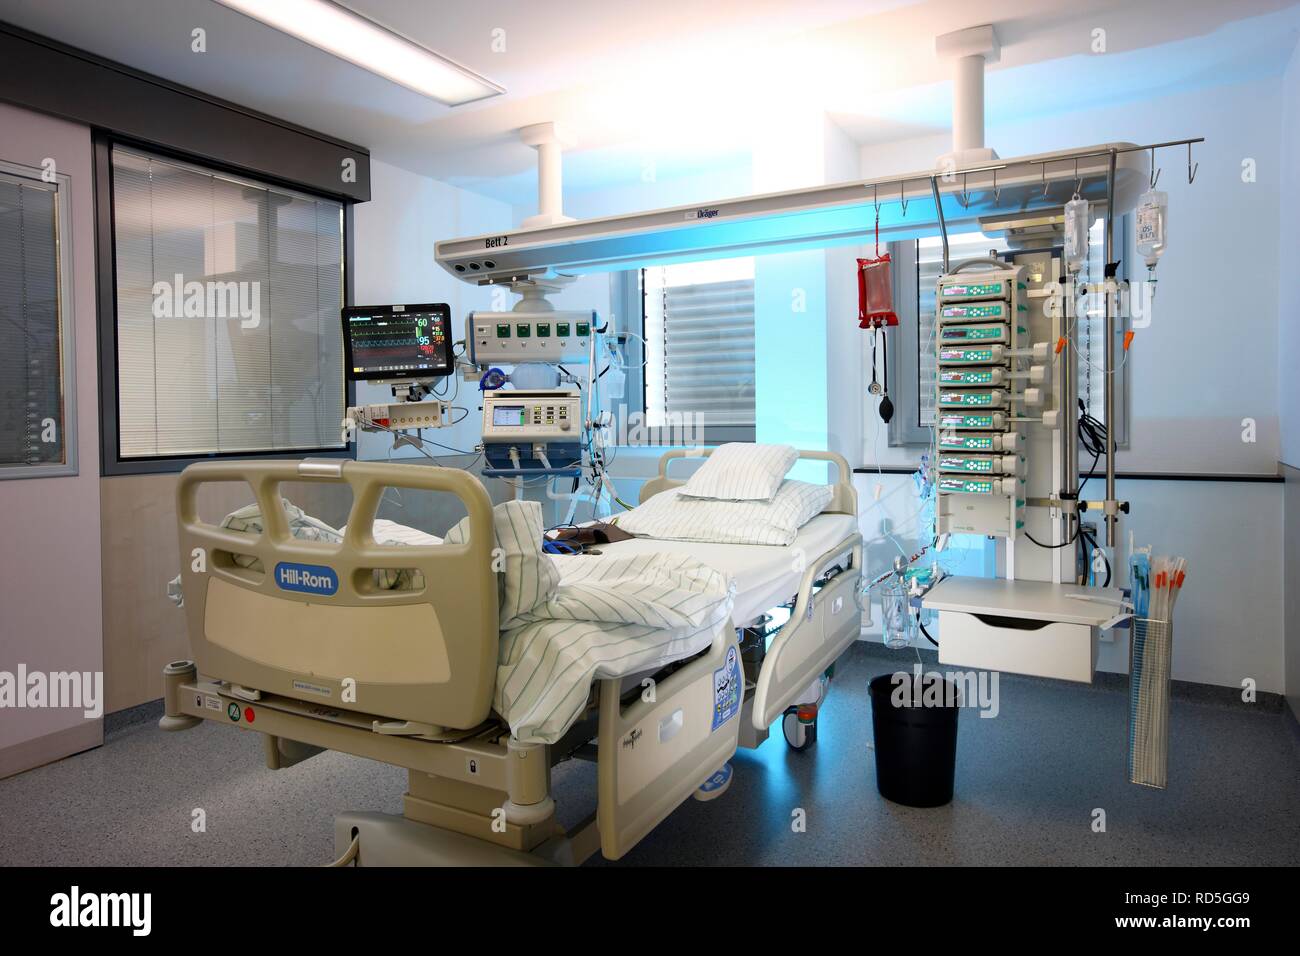 ICU oder Intensivstation, leeres Patientenbett für einen neuen Patienten bereit, medizinische Geräte für die Pflege, Belüftung und Stockfoto